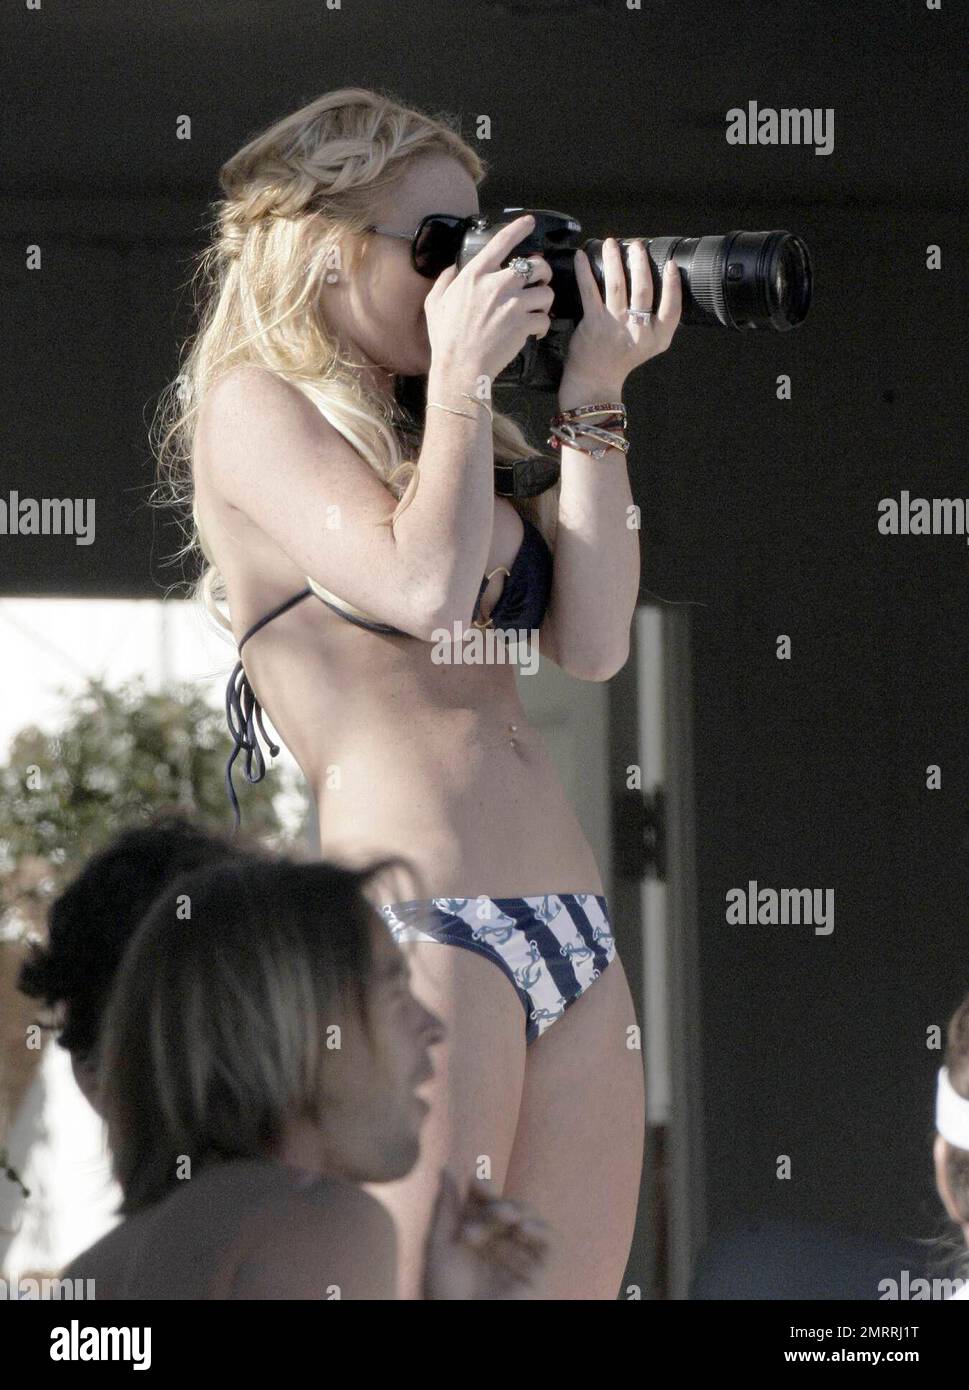 Lindsay Lohan celebra su 21st cumpleaños durante una fiesta con familiares  y amigos en una casa de playa. La estrella problemática, recién salido de  la rehabilitación, pasó el día en bikini tomando